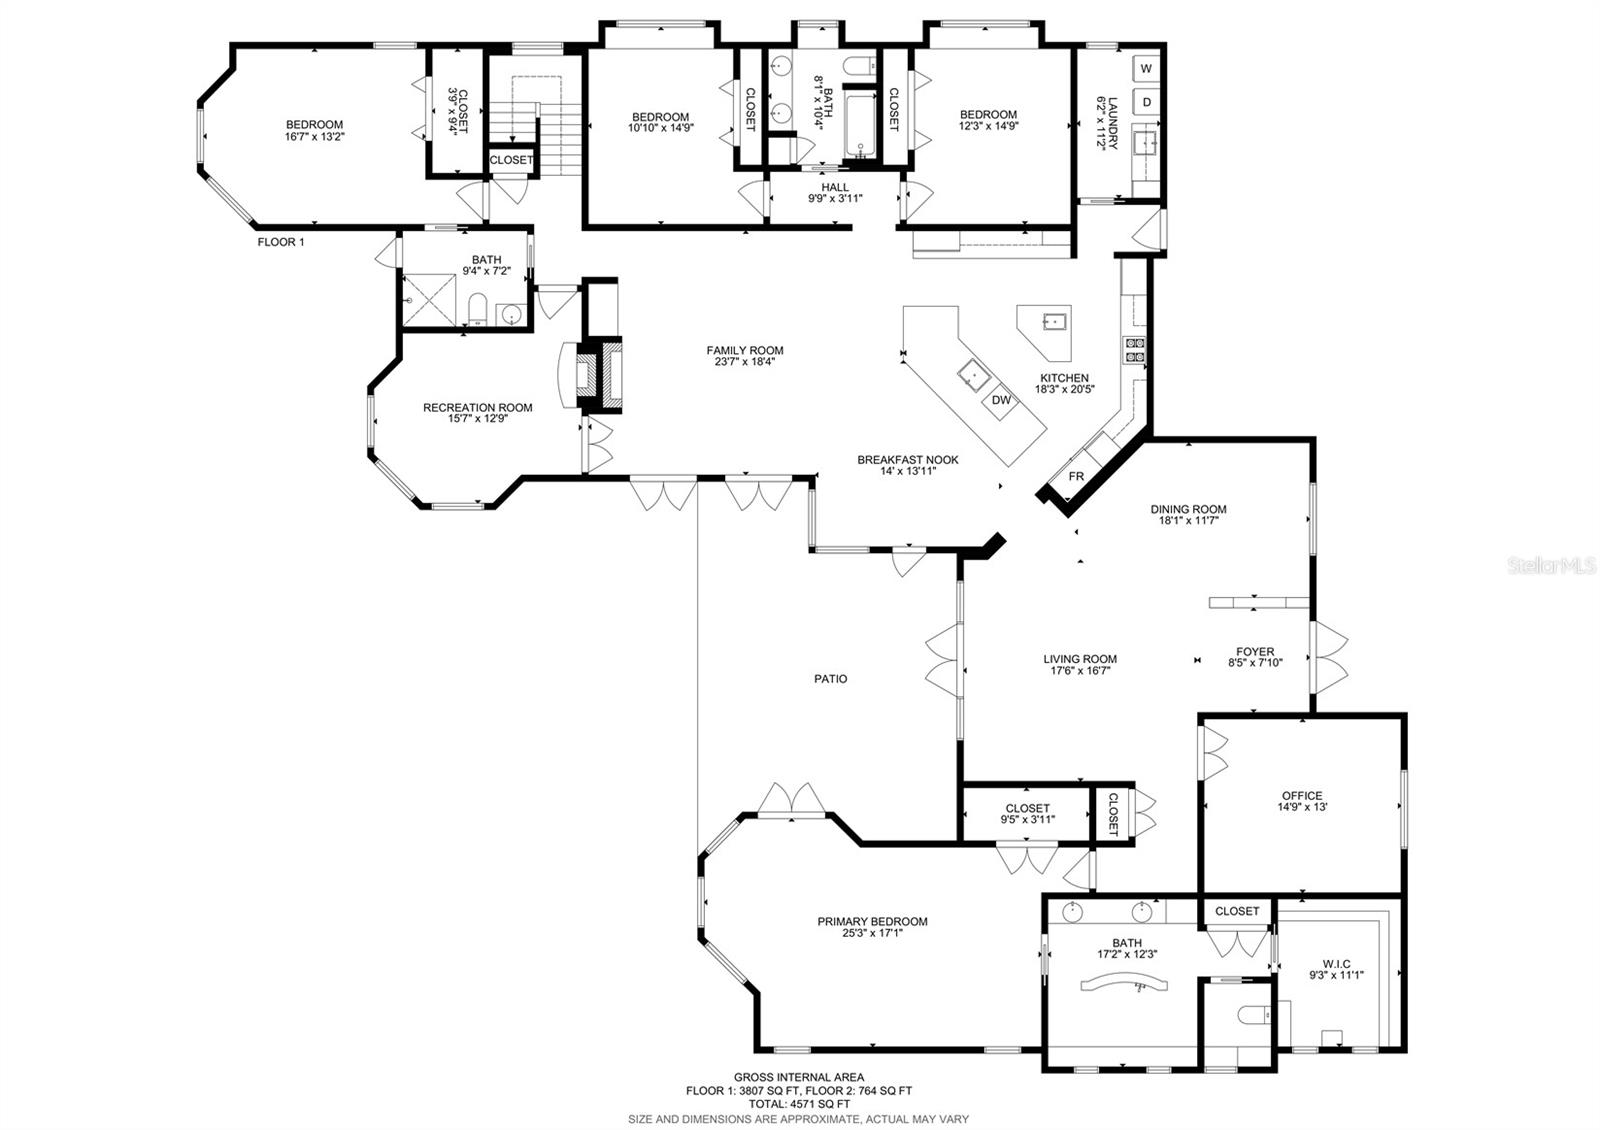 downstairs floor plan